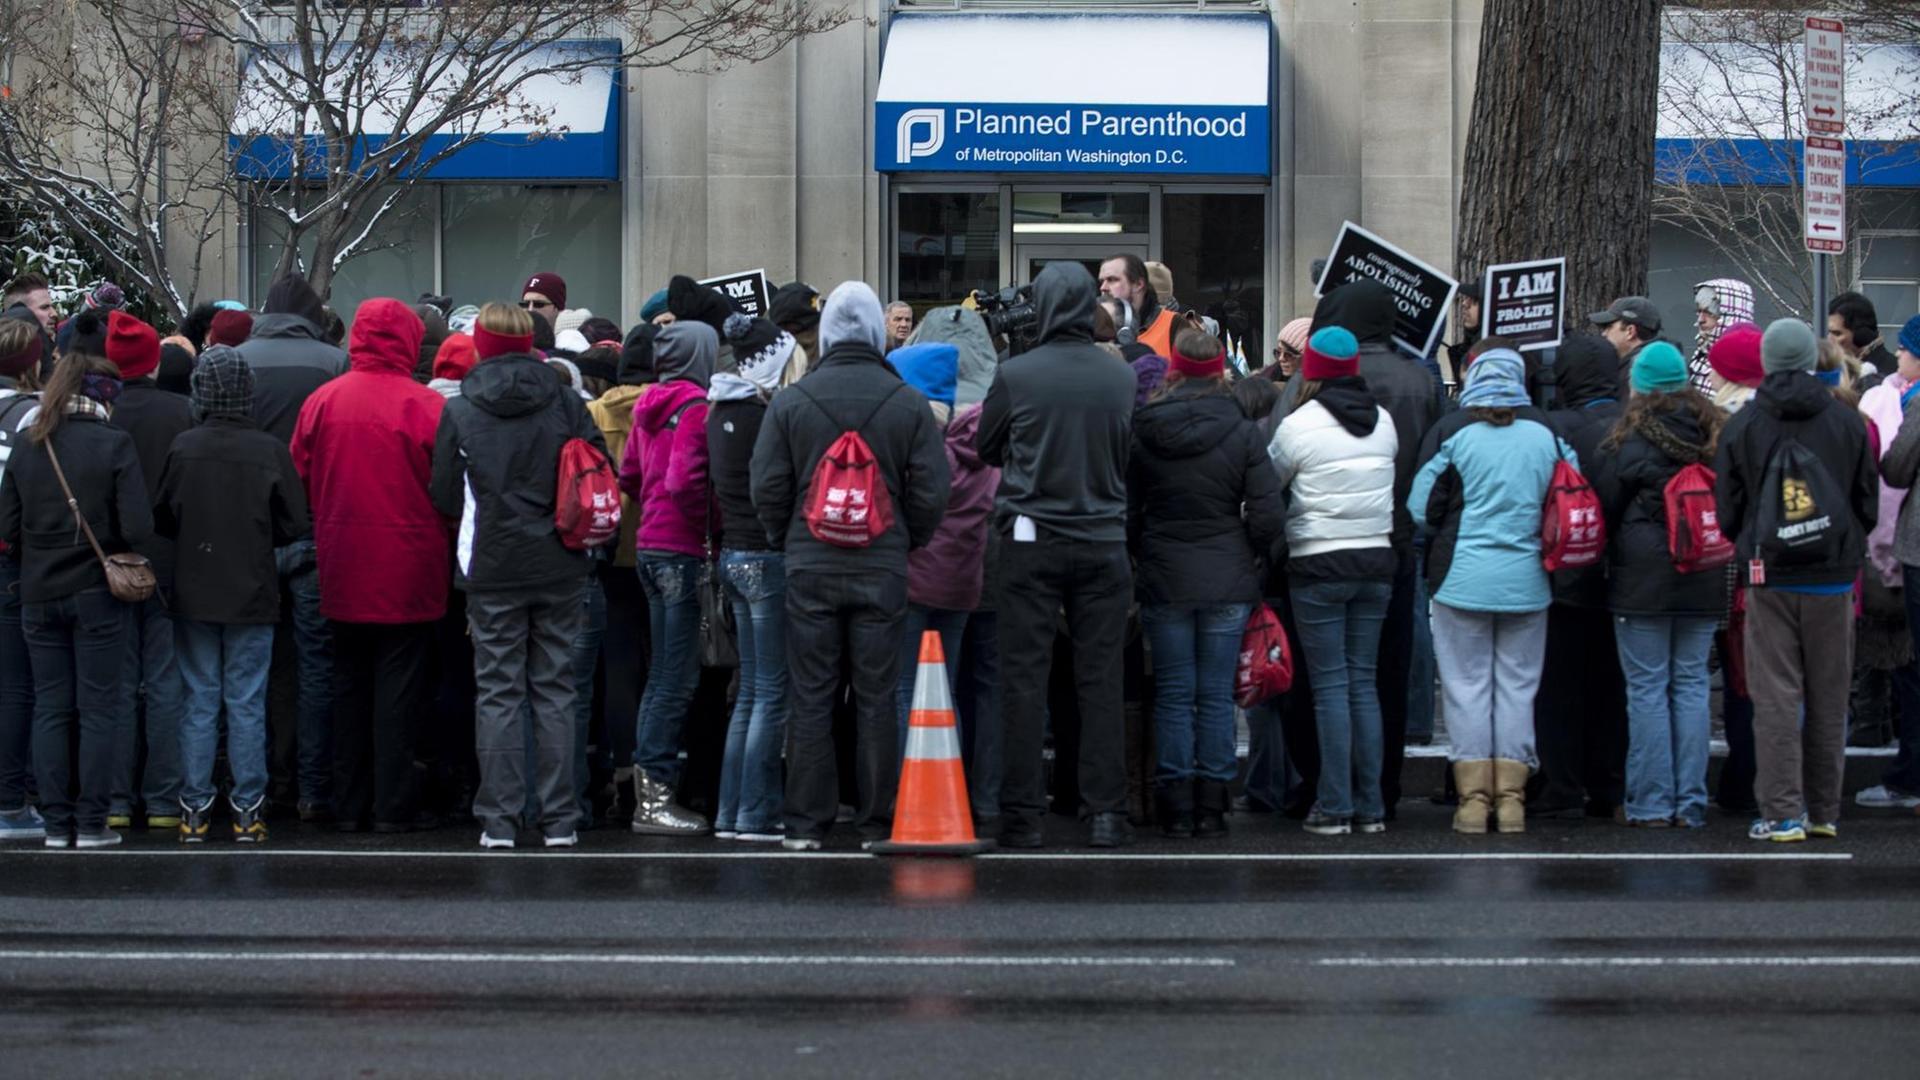 Abtreibungsgegner demonstrieren im Januar 2013 vor einer Niederlassung der Organisation "Planned Parenthood" in Washington D.C.